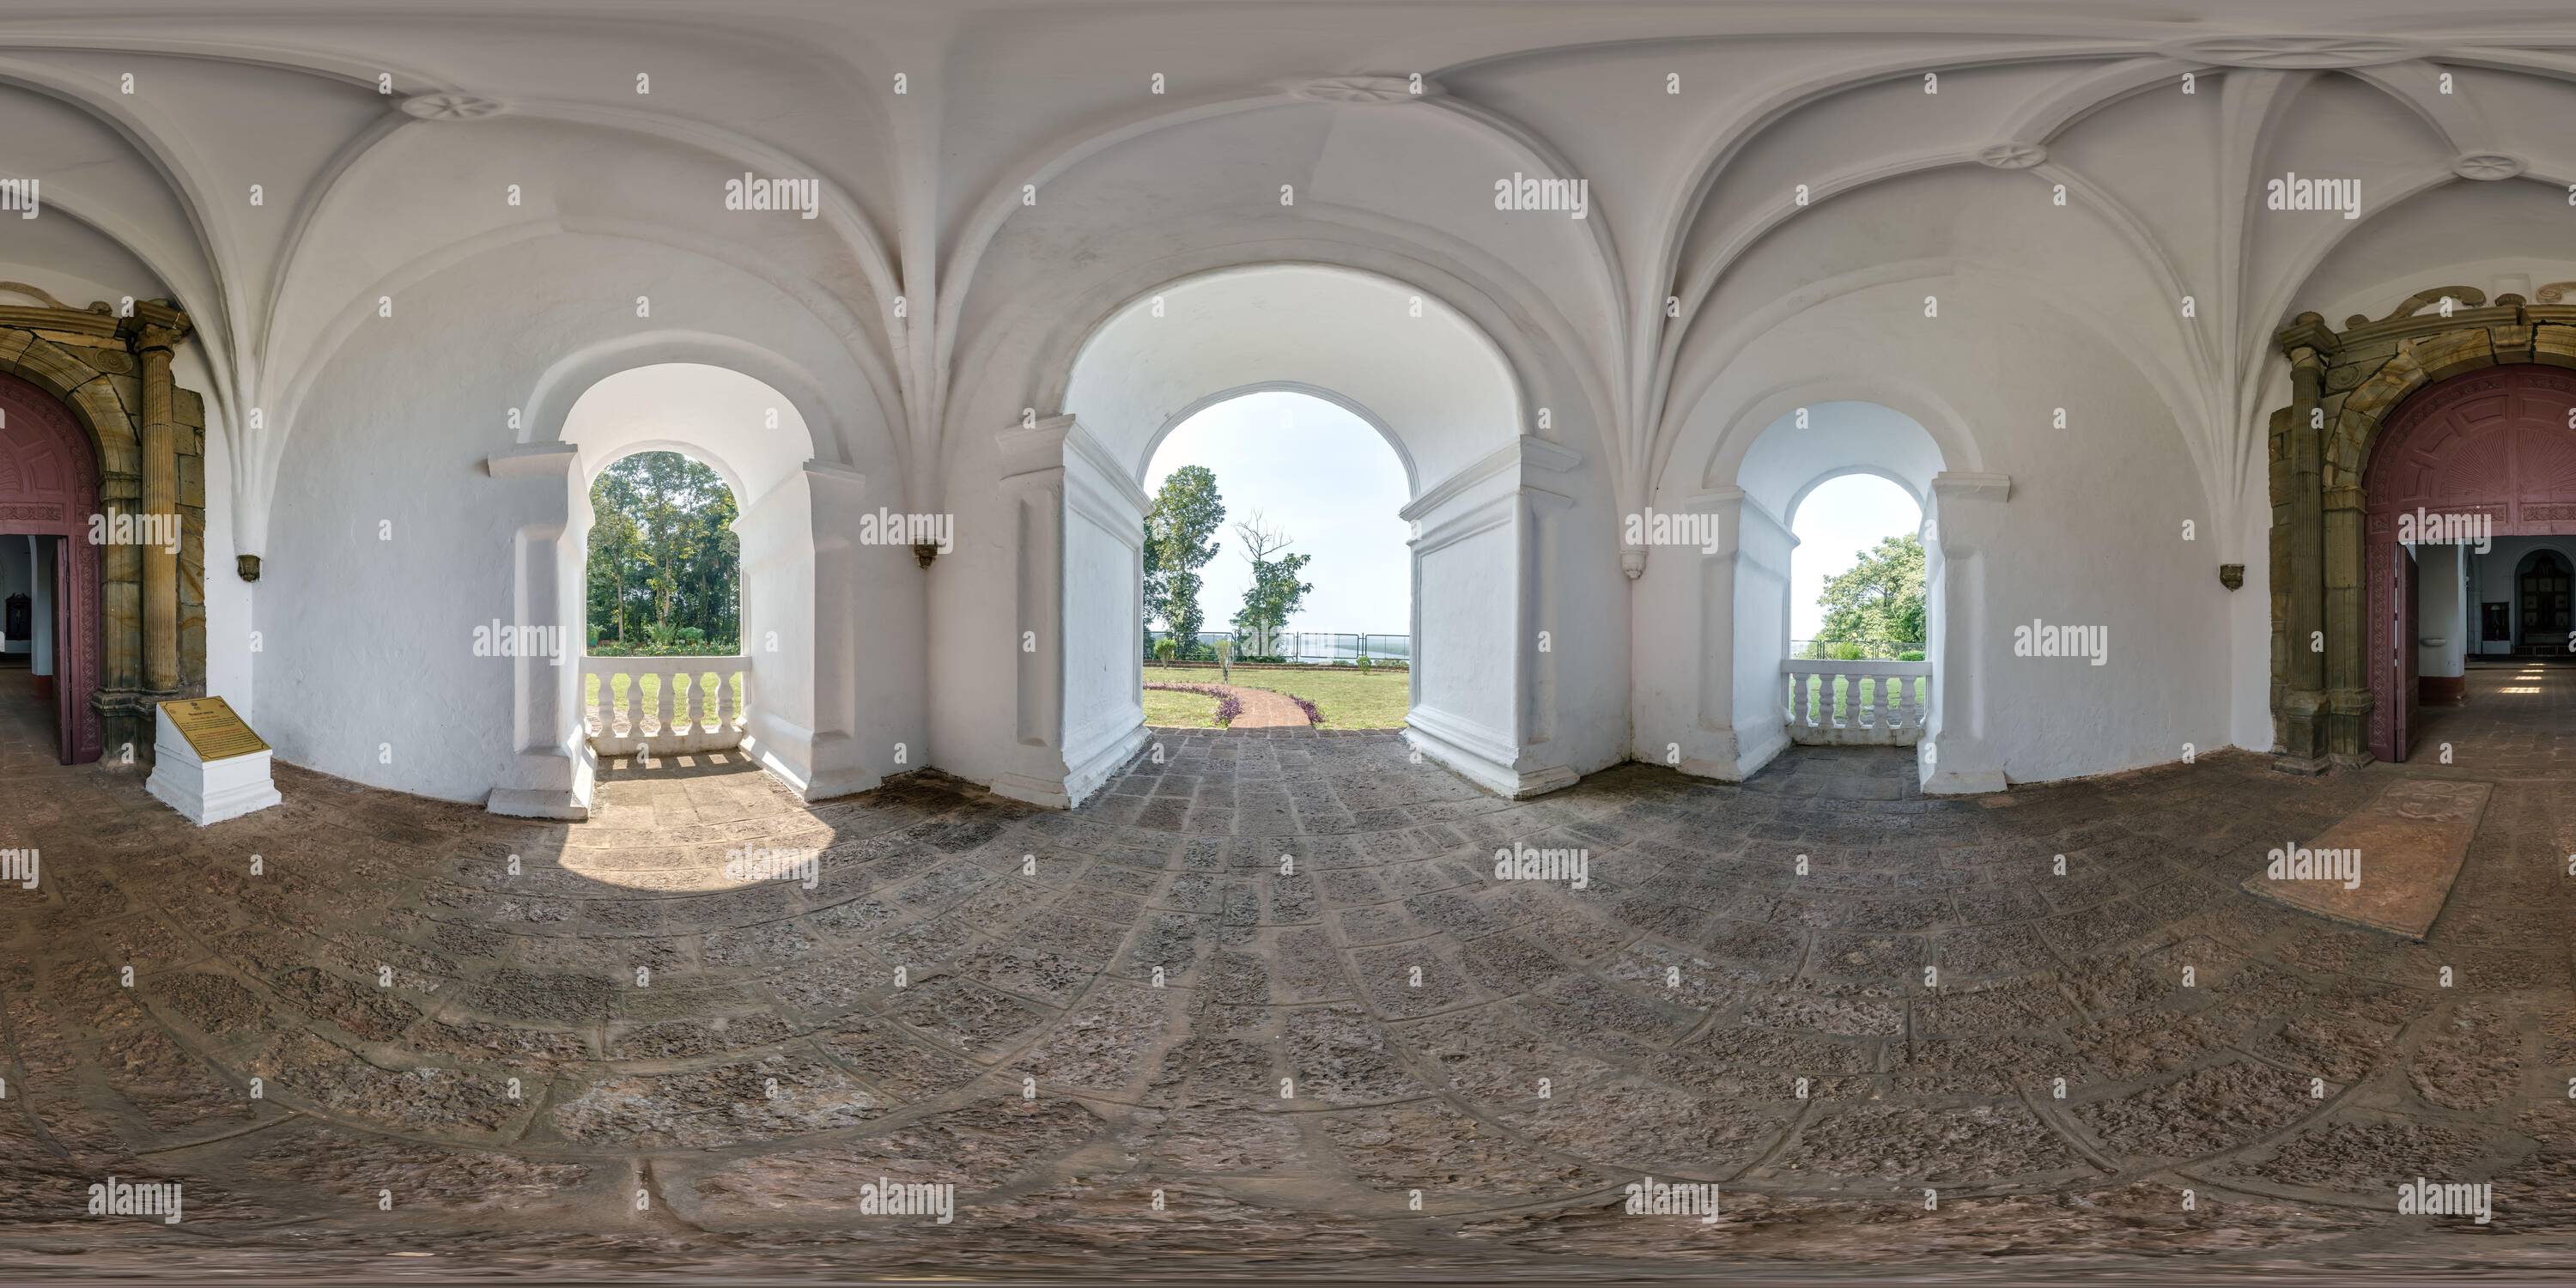 Vue panoramique à 360° de Panorama hdri 360 sphérique complet à l'intérieur vide abandonné de l'église portugaise dans le vieux goa inde en projection équirectangulaire, VR AR réalité virtuelle cont